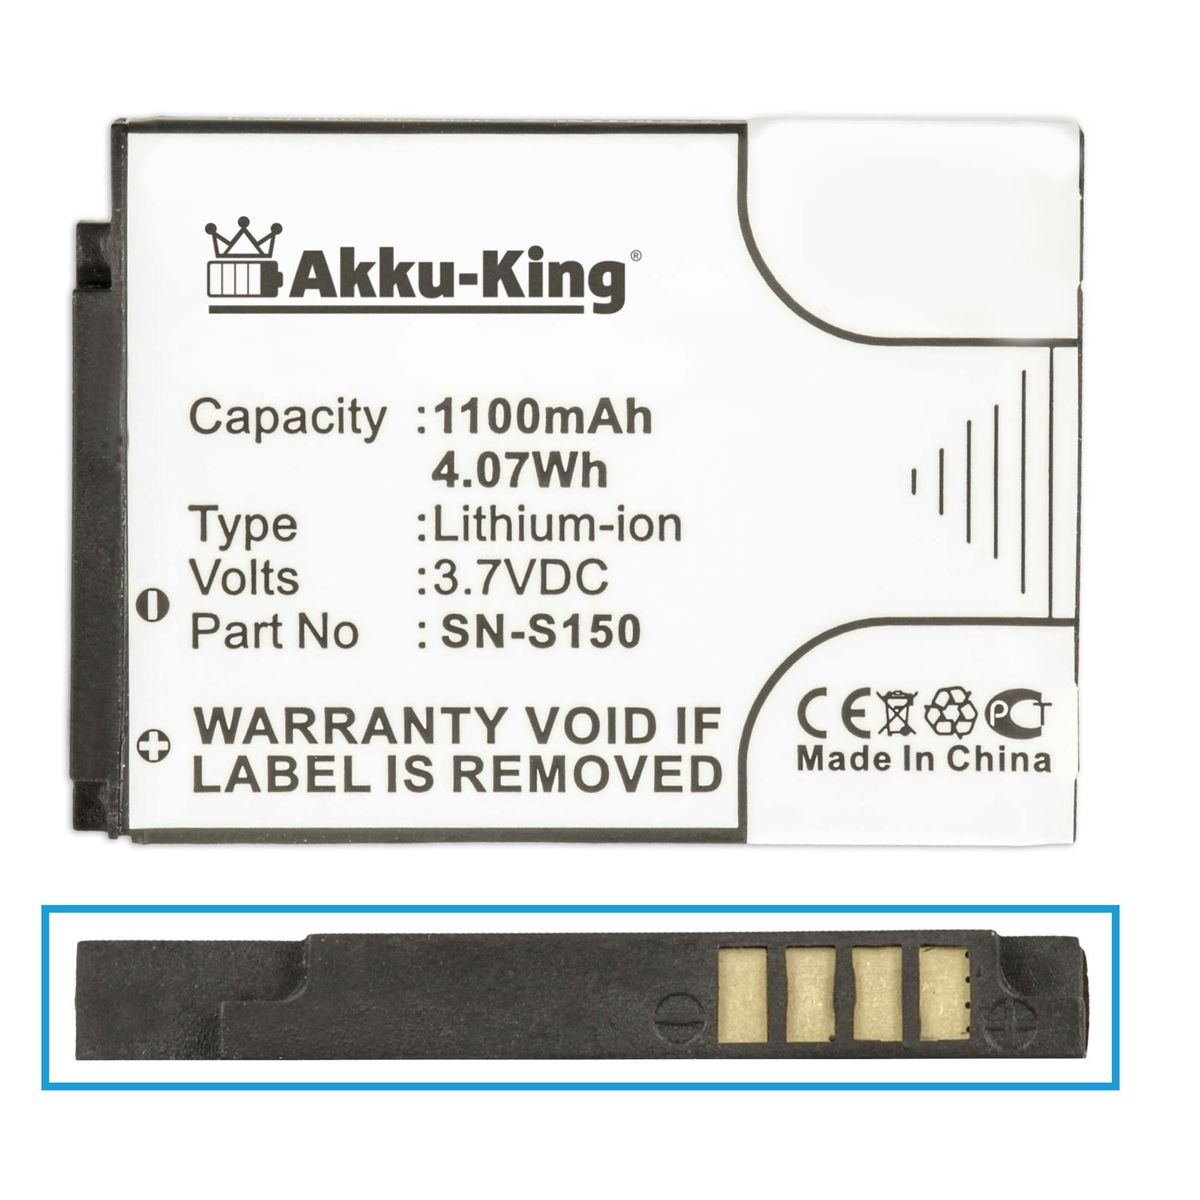 AKKU-KING Akku Volt, 3.7 mit Philips N-S150 Li-Ion 1100mAh Geräte-Akku, kompatibel